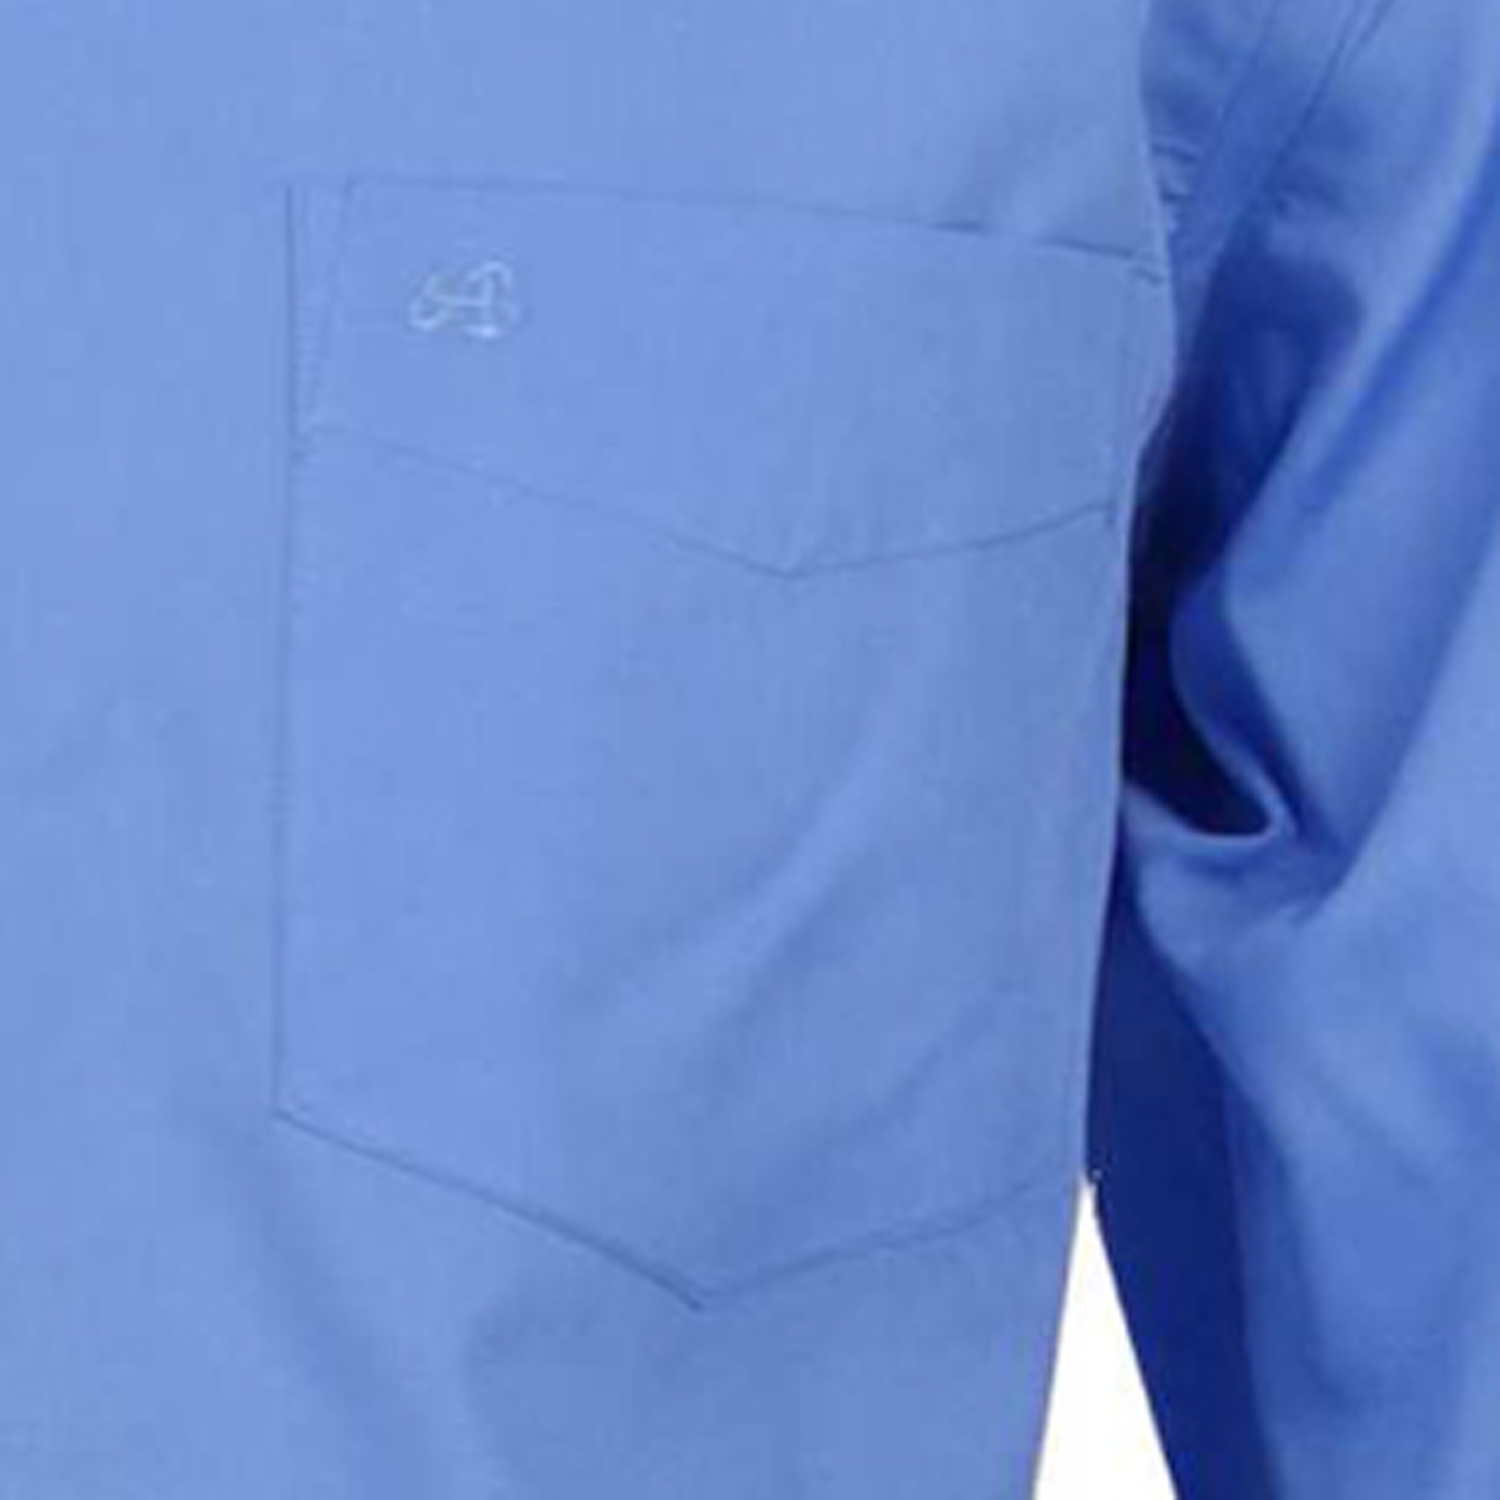 Blaues Übergrößen Hemd (langarm) von ARRIVEE bis Größe 8XL